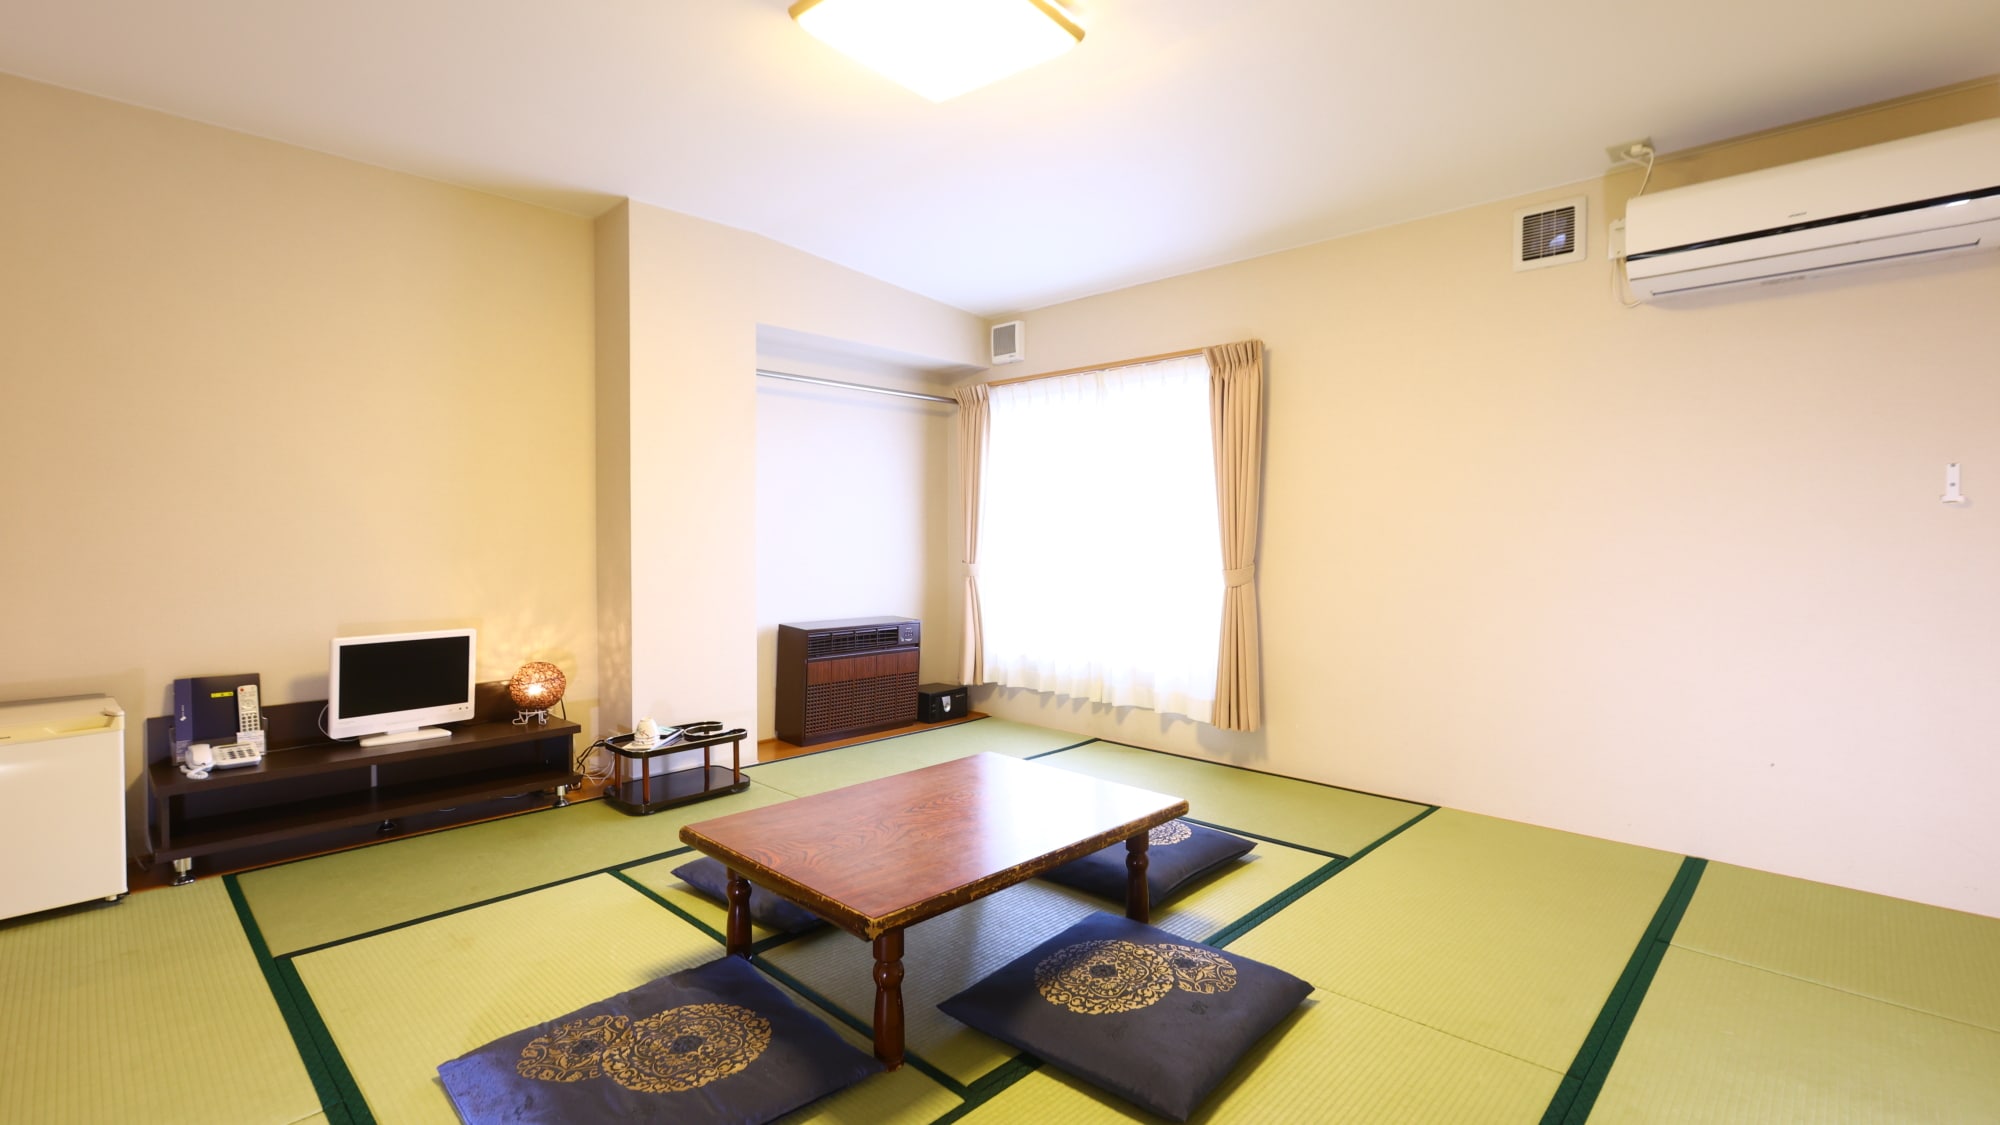 日式房間的例子。推薦給團體和家庭。